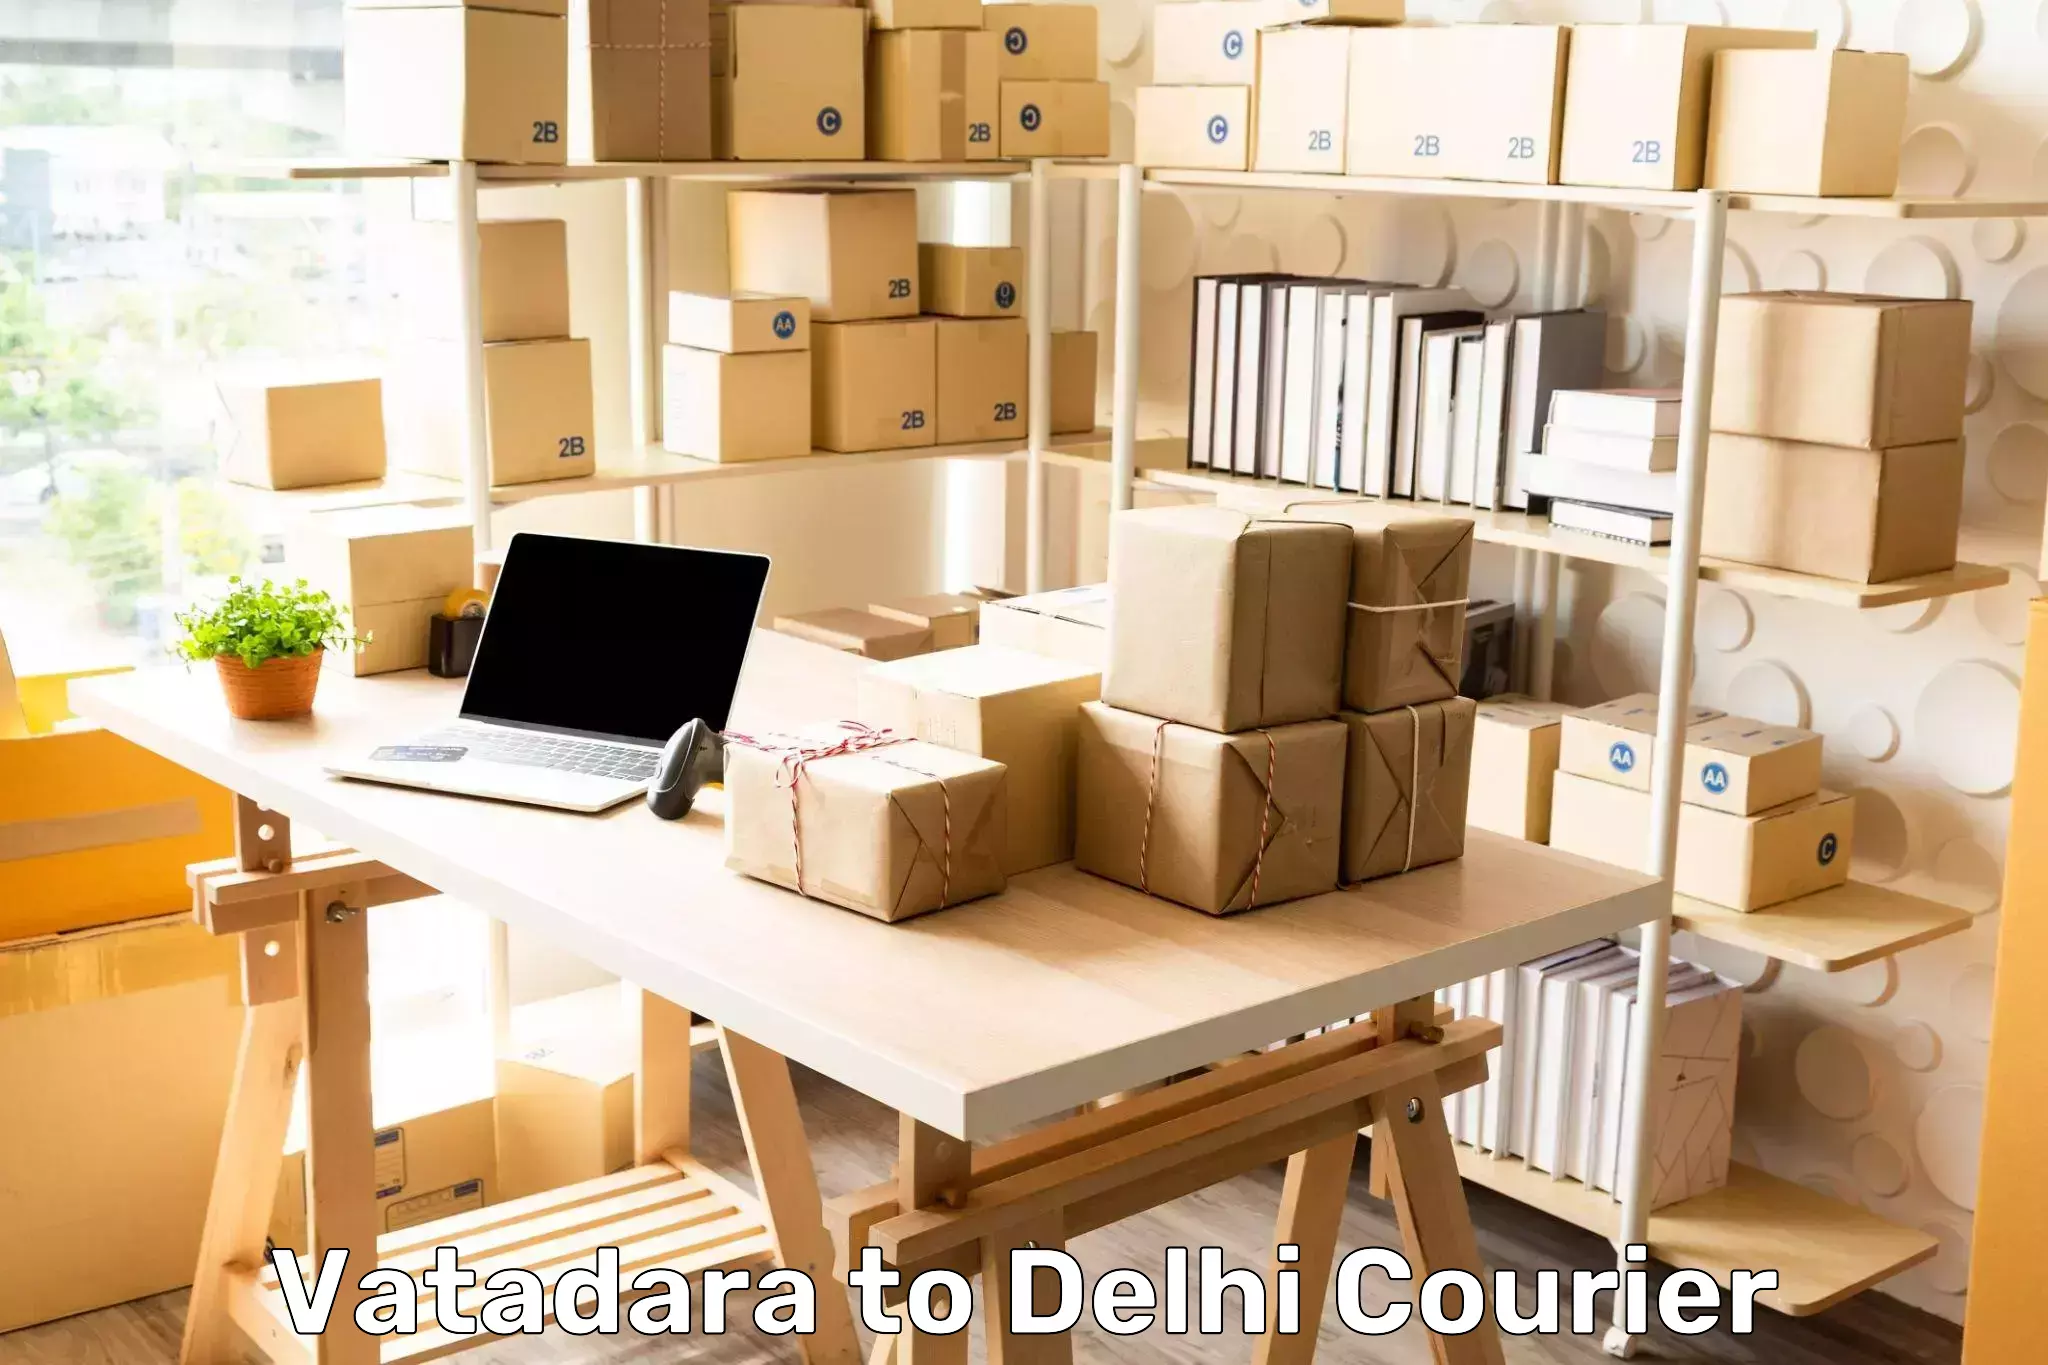 Reliable logistics providers Vatadara to Delhi